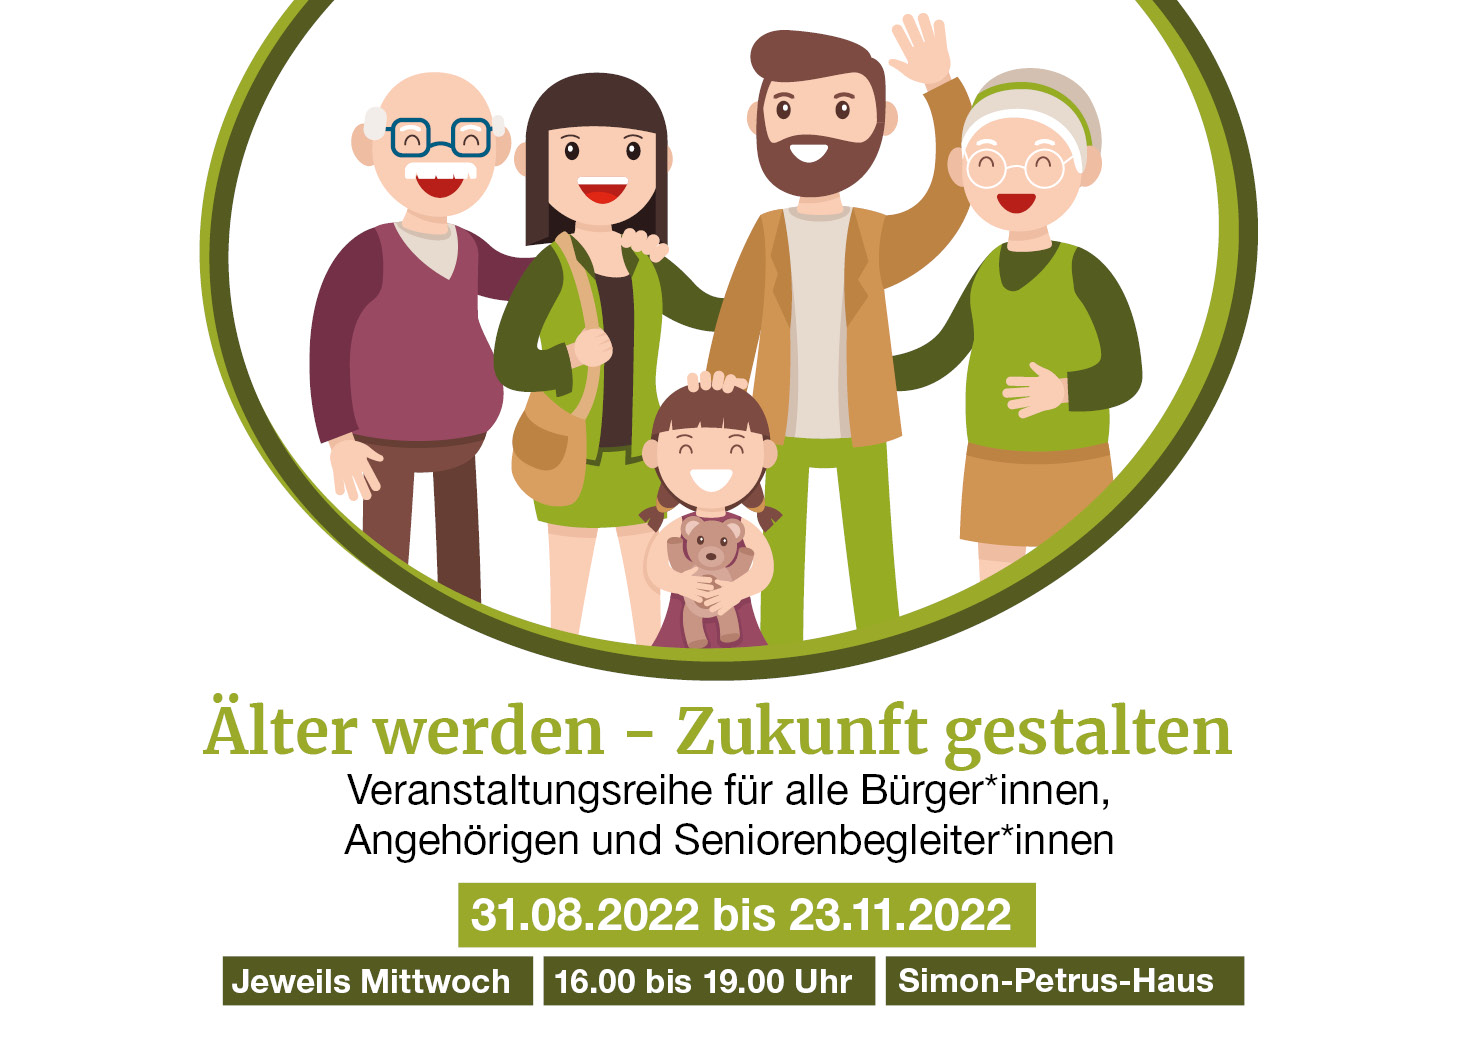 Seniorenbüro Jena: Älter werden - Zukunft gestalten. Neue Veranstaltungsreihe ab 31.08.2022